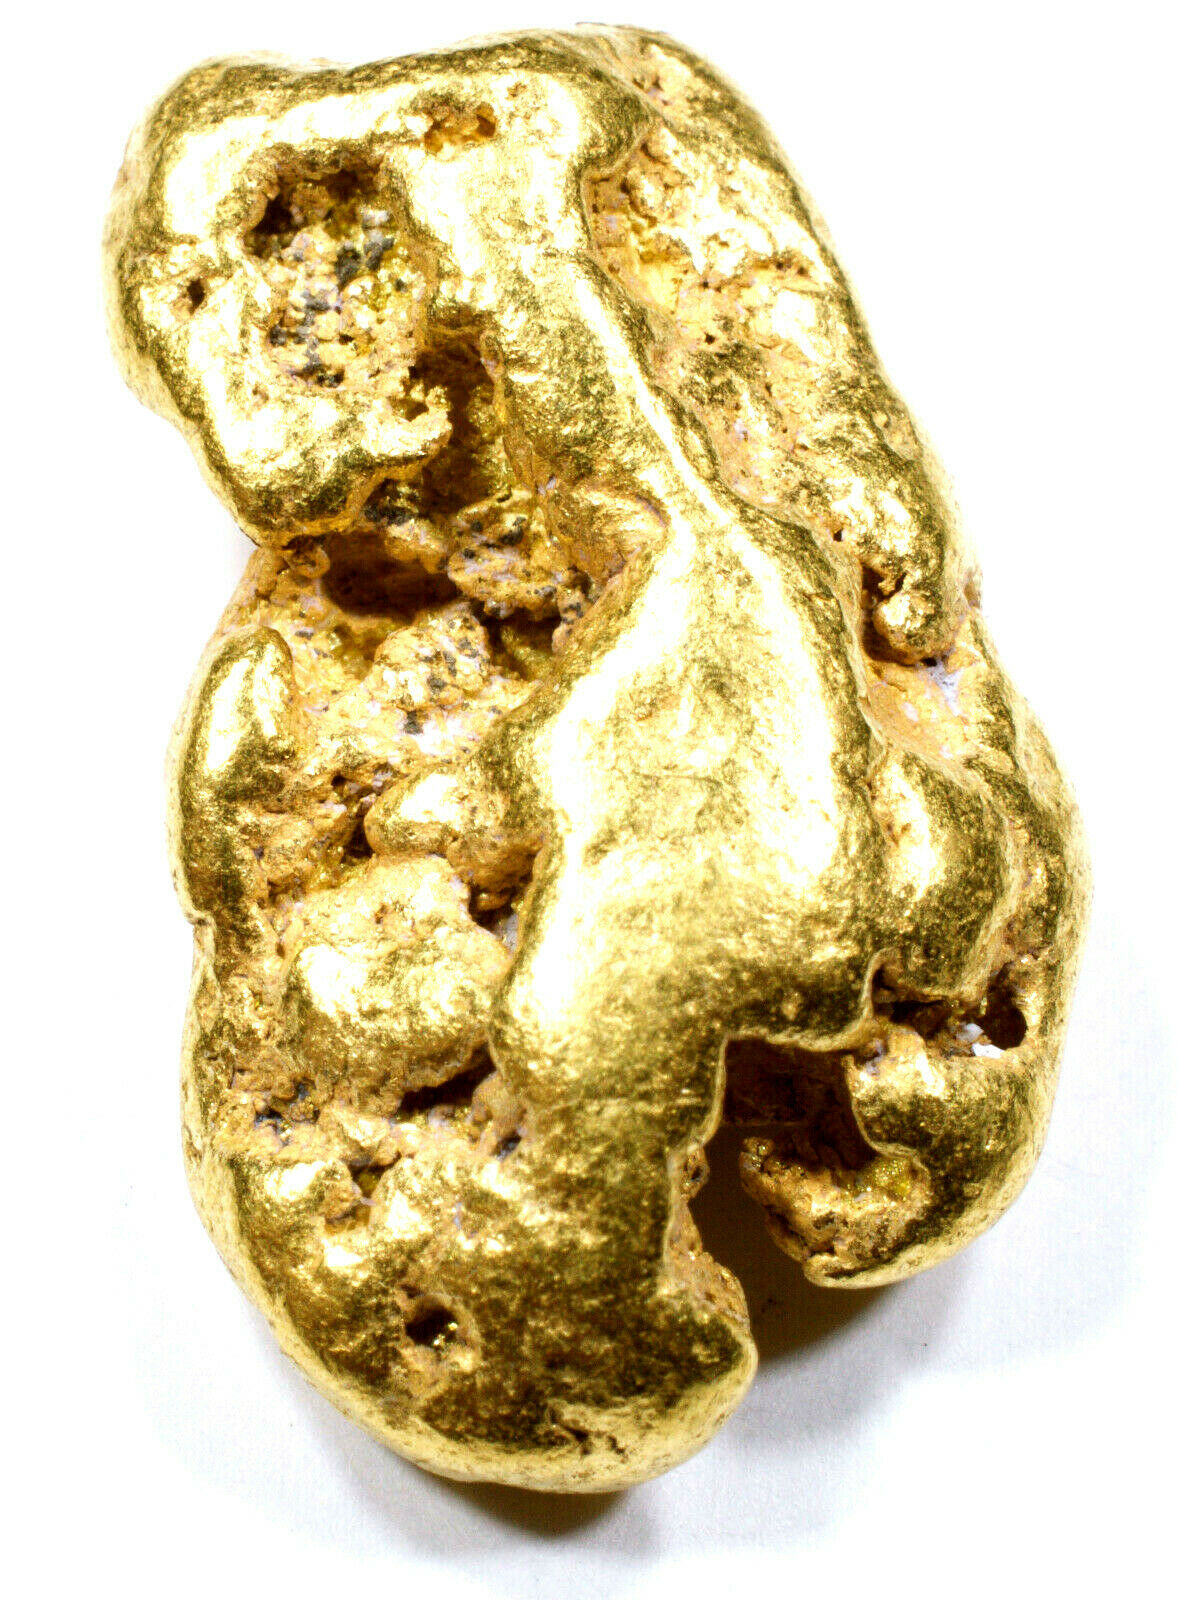 10.683 GRAMS ALASKAN YUKON NATURAL PURE GOLD NUGGET GENUINE (#N913) B GRADE